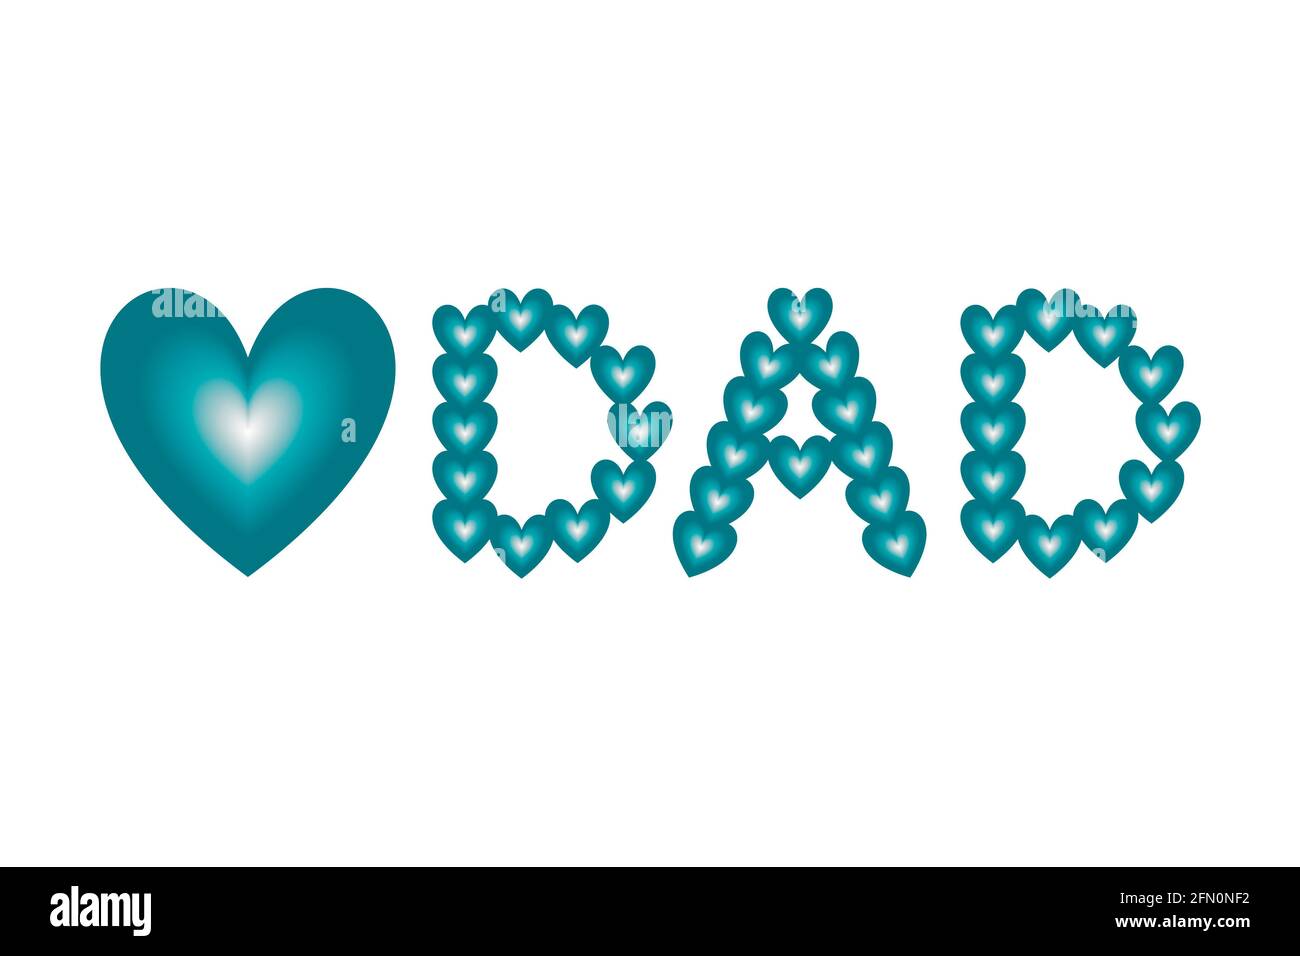 Hellblaue und weiße Herzformen mit Farbverlauf sind in das Liebessymbol und das Wort „PAPA“ eingeordnet. Konzept für Vatertag Konzept. Stockfoto